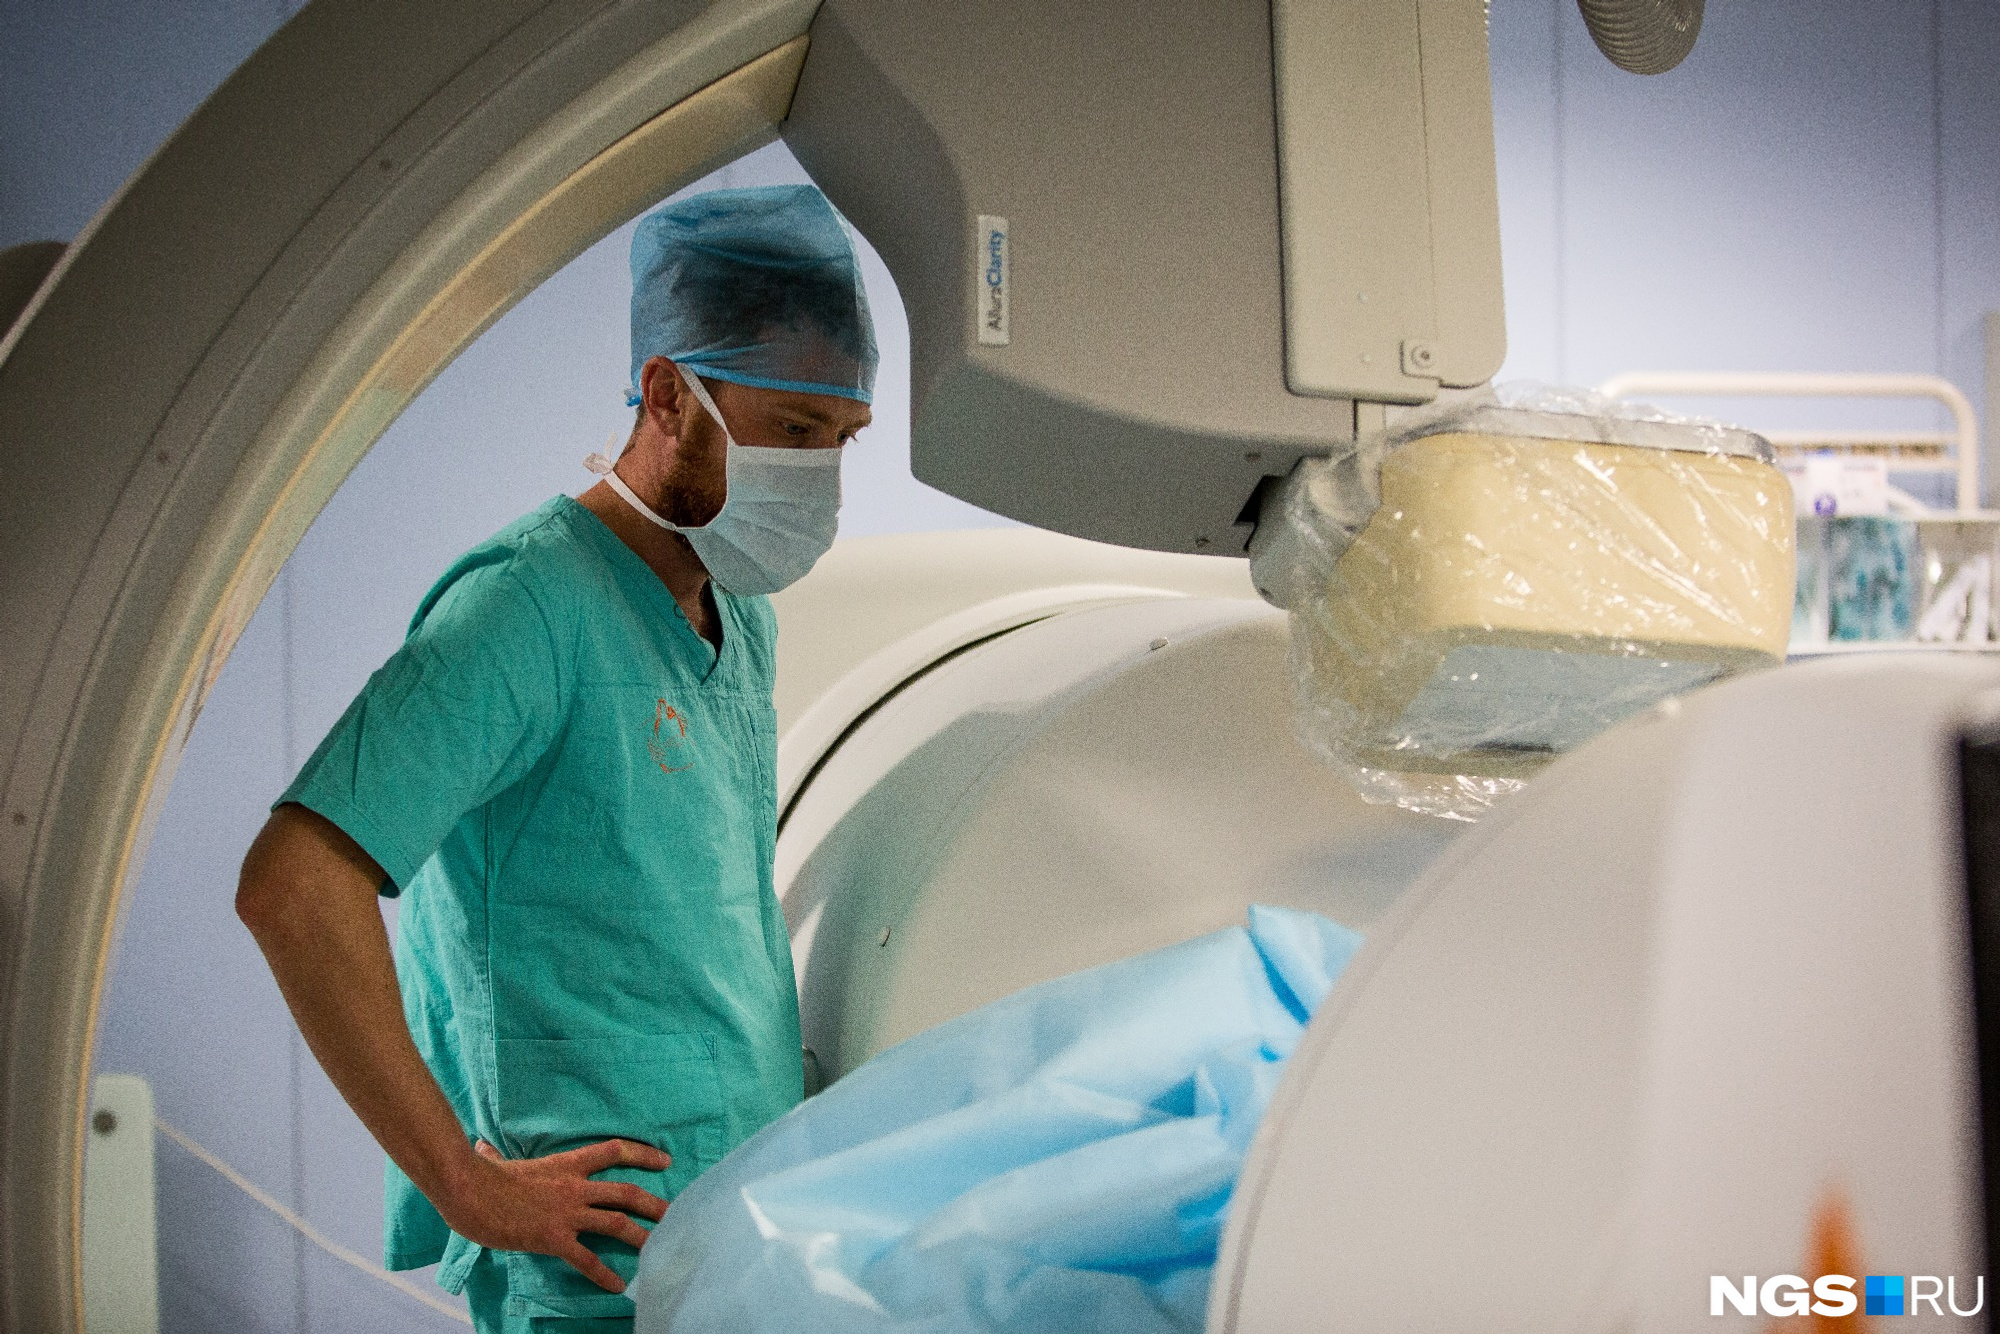 Робот позволяет уменьшить рентгеновское облучение пациента и хирурга во время операции